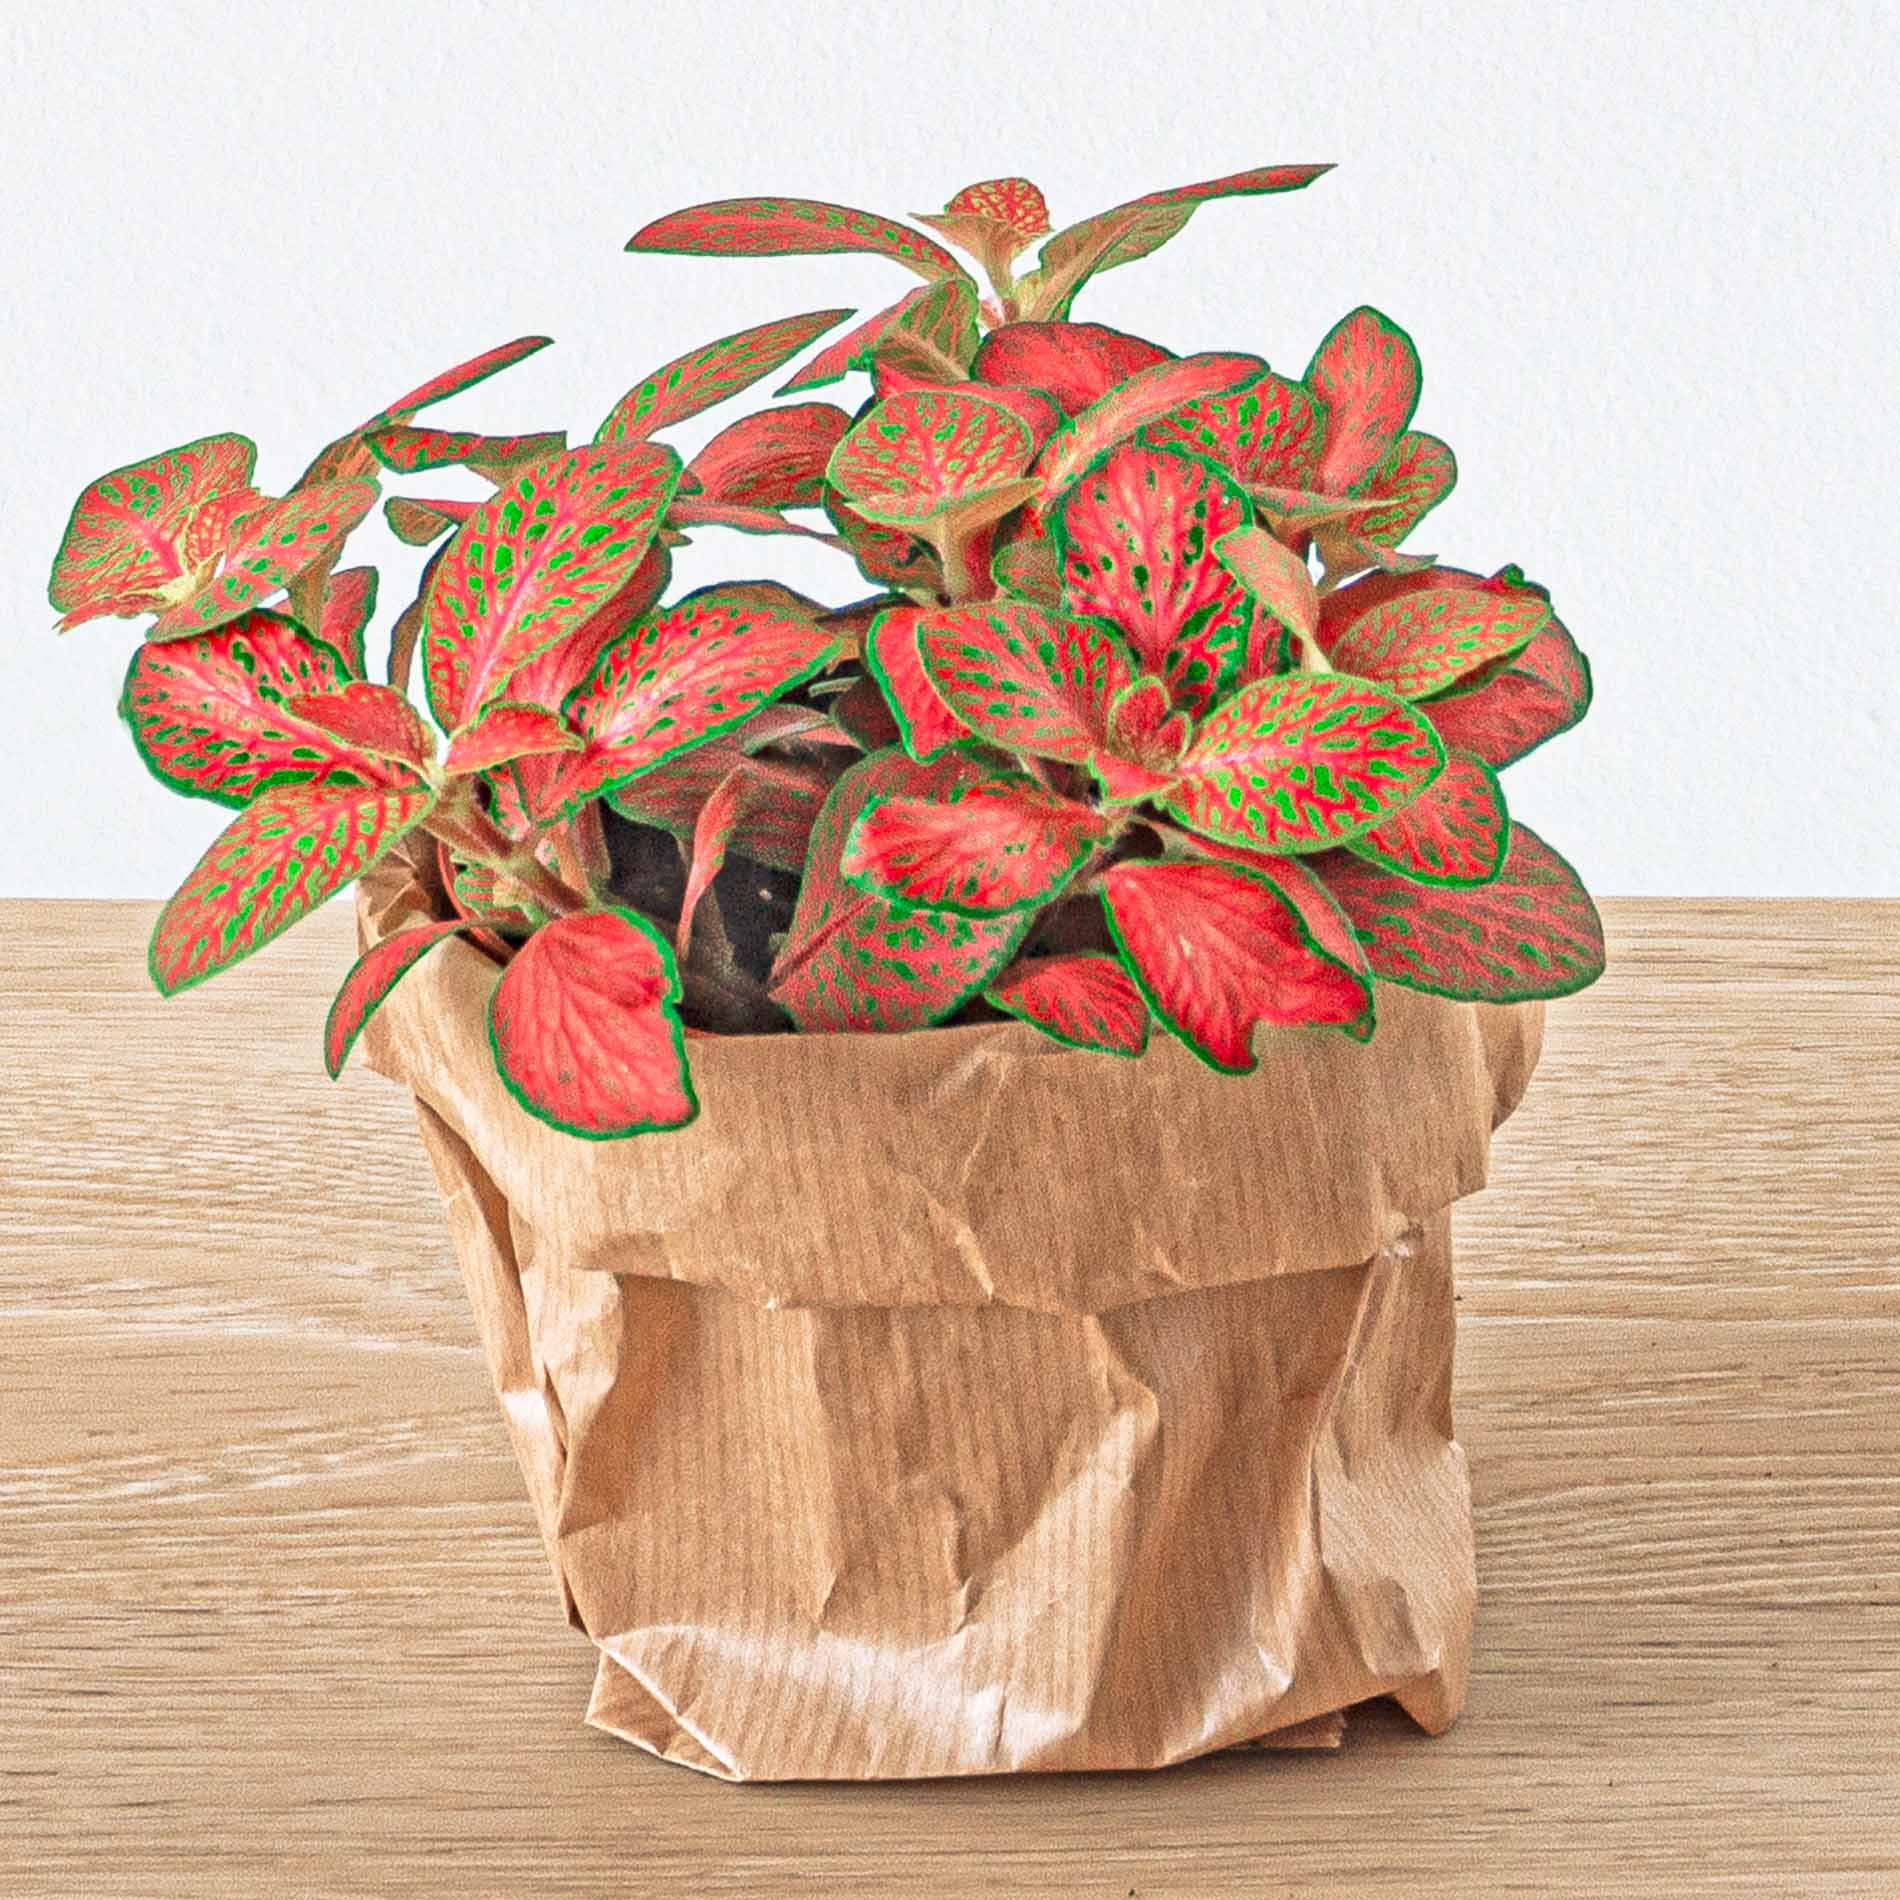 Kit pour terrarium 3 plantes coffea, fougère et fittonia rouge DIY